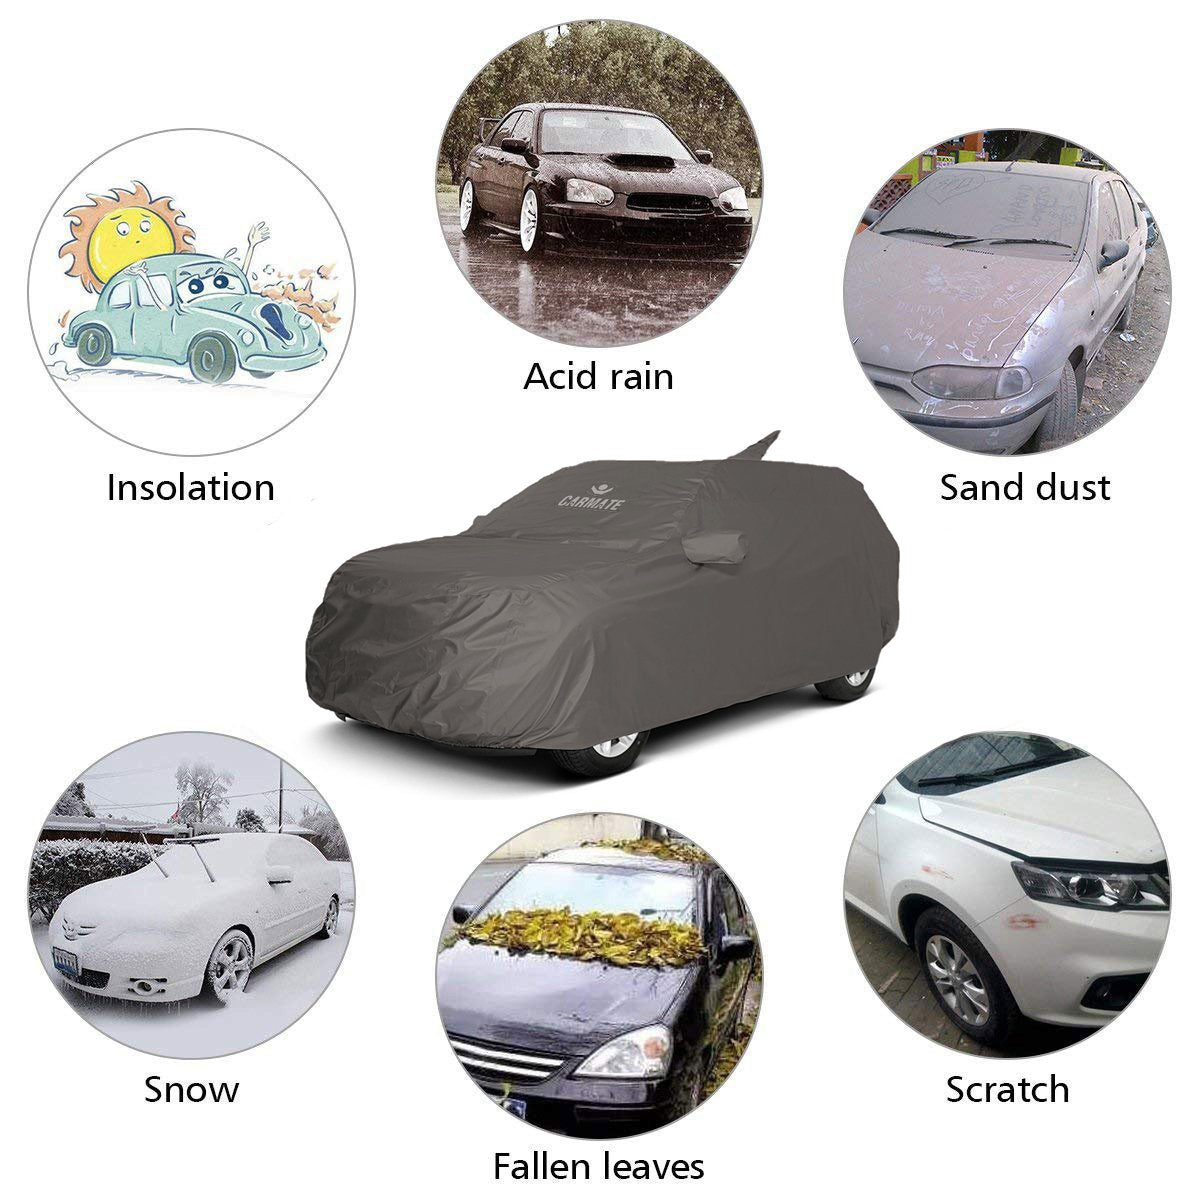 Carmate Car Body Cover 100% Waterproof Pride (Grey) for Honda - Mobilio - CARMATE®